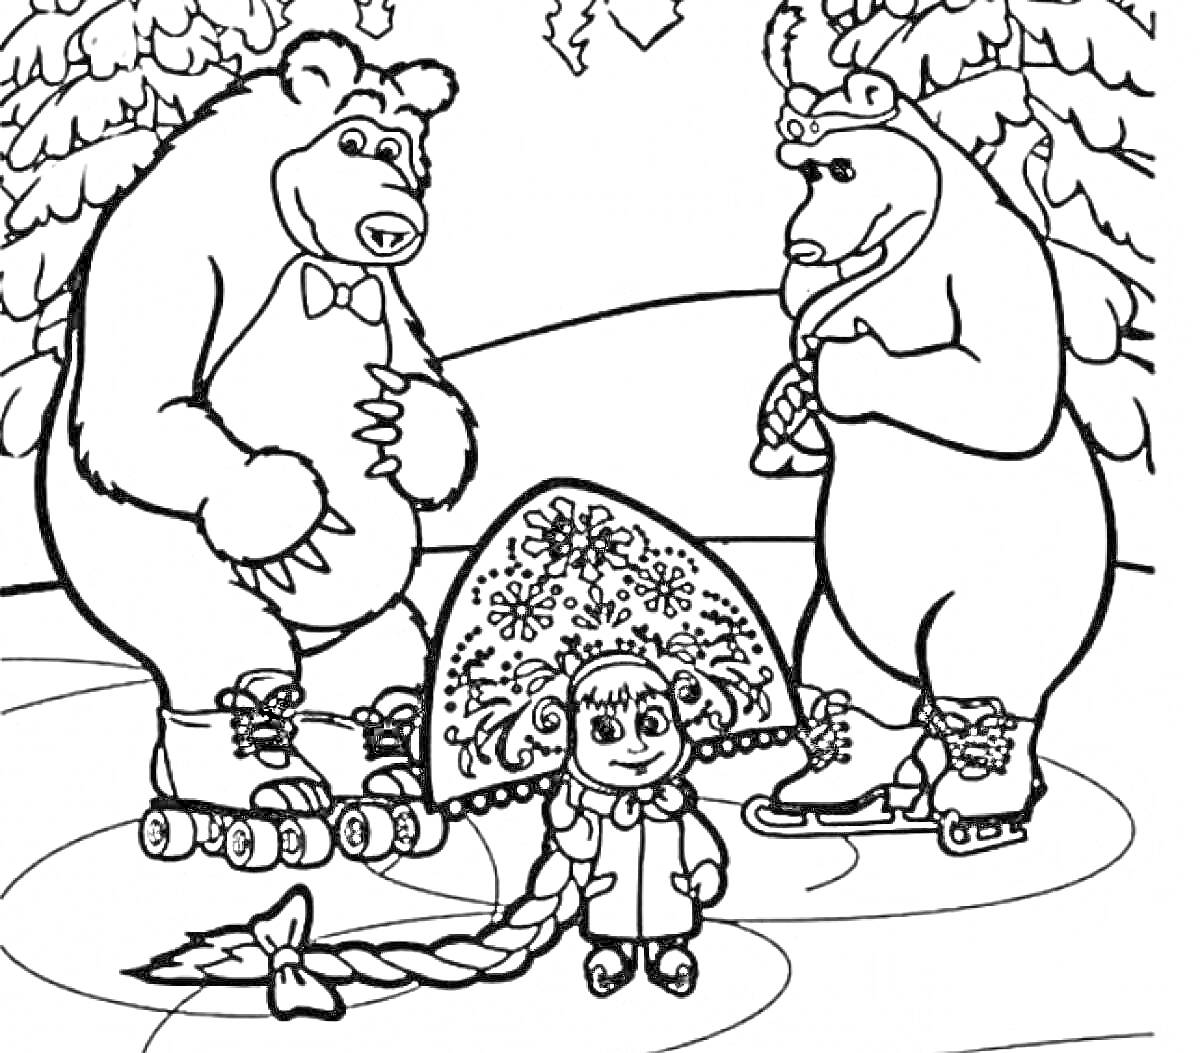 Раскраска Маша и Медведь на катке зимой, Медведи на коньках, Маша в костюме и с длинной косой